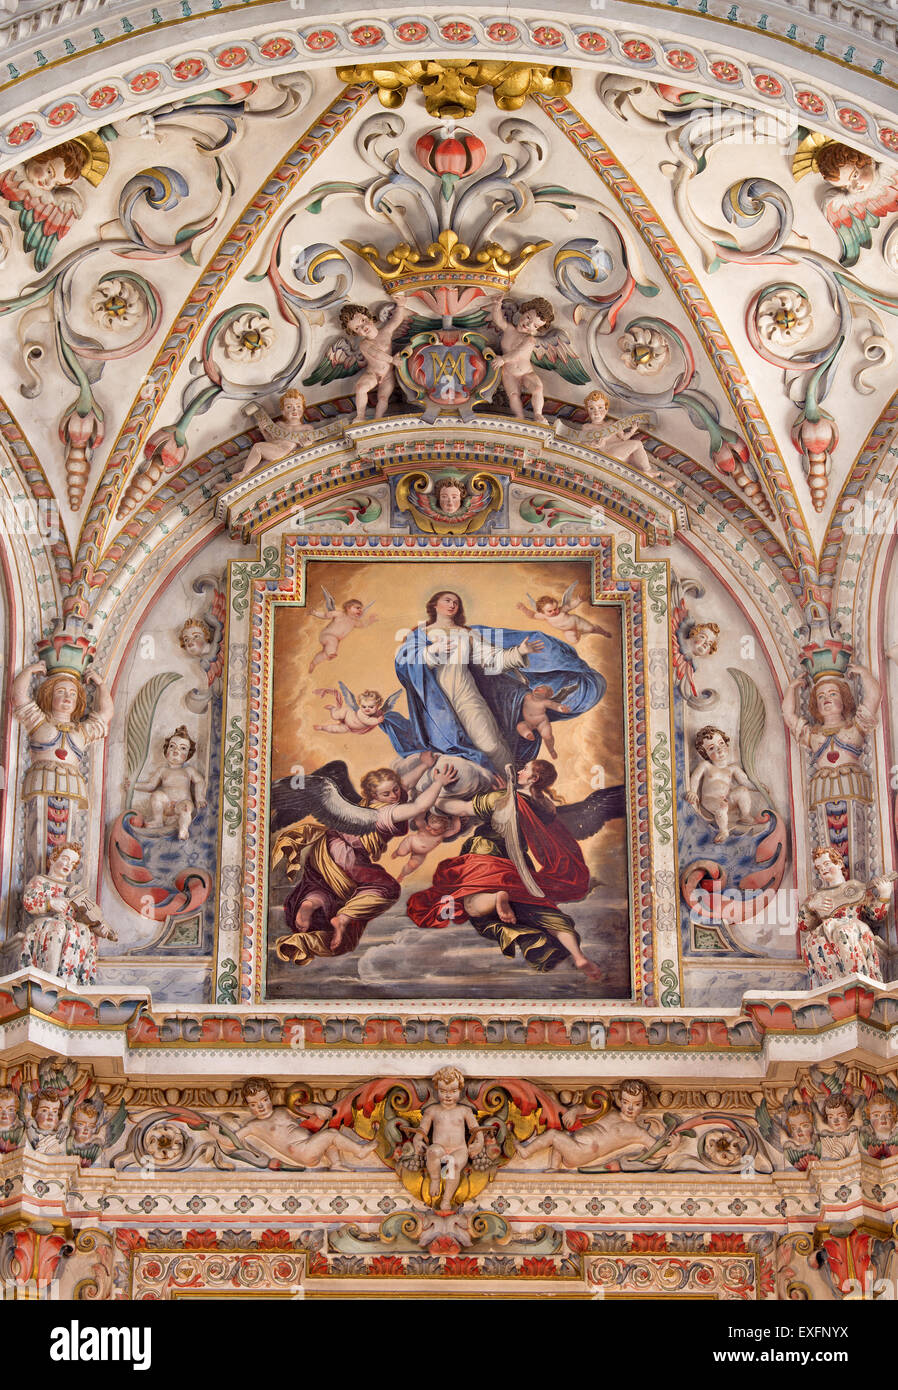 GRANADA, Spagna - 31 Maggio 2015: il dettaglio di affresco nel santuario barocco in chiesa il Monasterio de la Cartuja con il presupposto Foto Stock